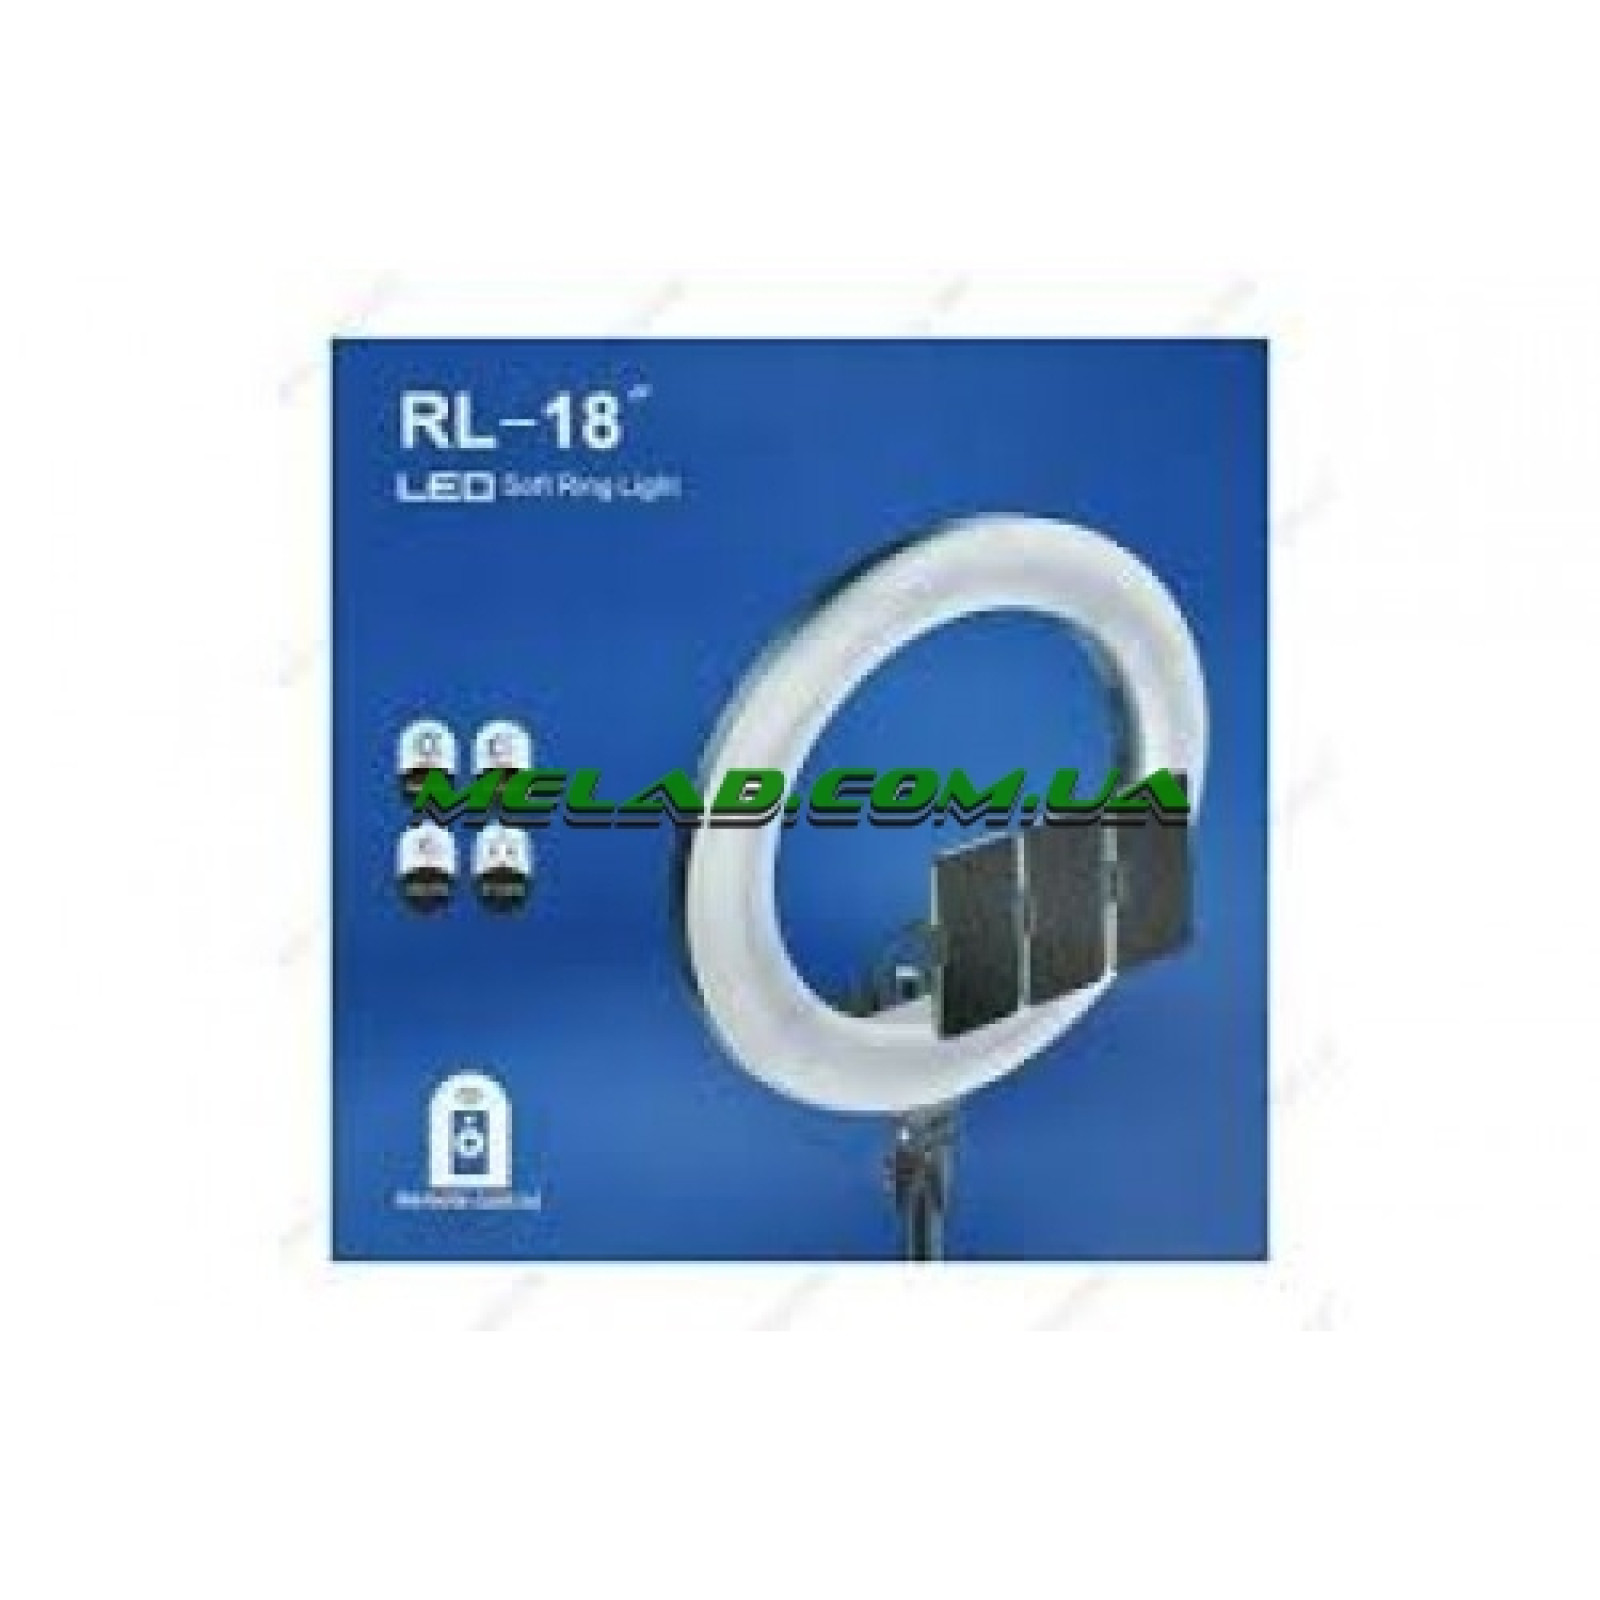 НЕТУ Кольцевая LED лампа RL-18 (45см) (3 крепления) (пульт) (сумка) (6)